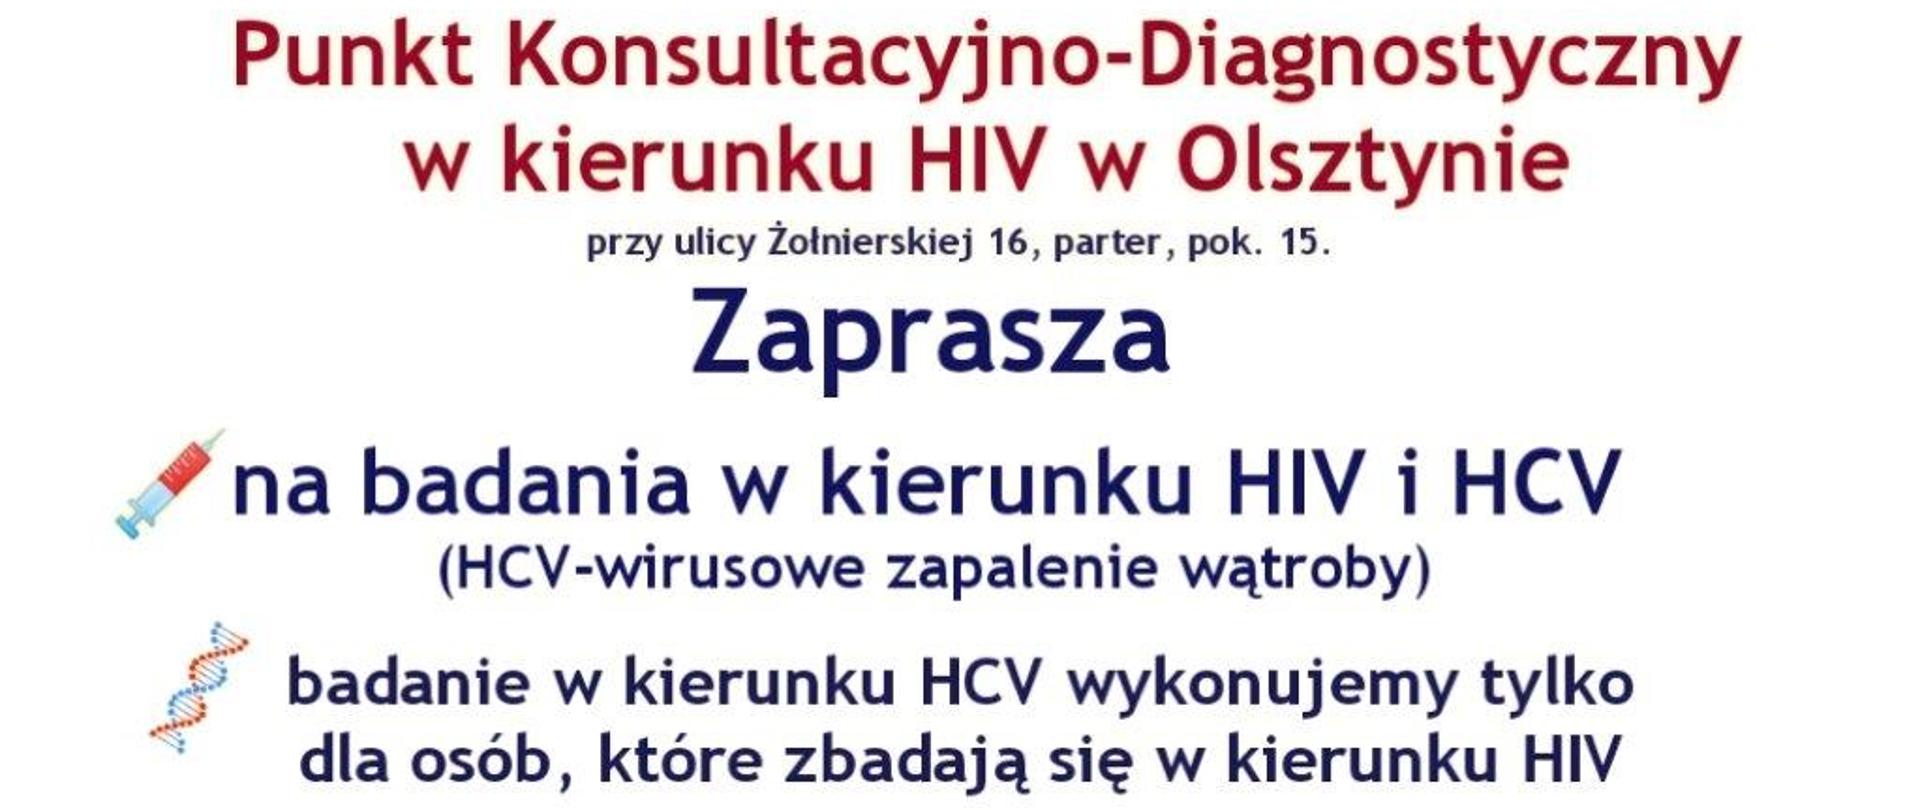 Punkt Konsultacyjno-Diagnostyczny w kierunku HIV w Olsztynie
przy ulicy Żołnierskiej 16, parter, pok. 15.
Zaprasza
na badania w kierunku HIV i HCV
(HCV-wirusowe zapalenie wątroby)
badanie w kierunku HCV wykonujemy tylko dla osób, które zbadają się w kierunku HIV
Badania wykonywane są bezpłatnie i anonimowo. Punkt czynny w każdy wtorek i czwartek od 15:00 do 18:00